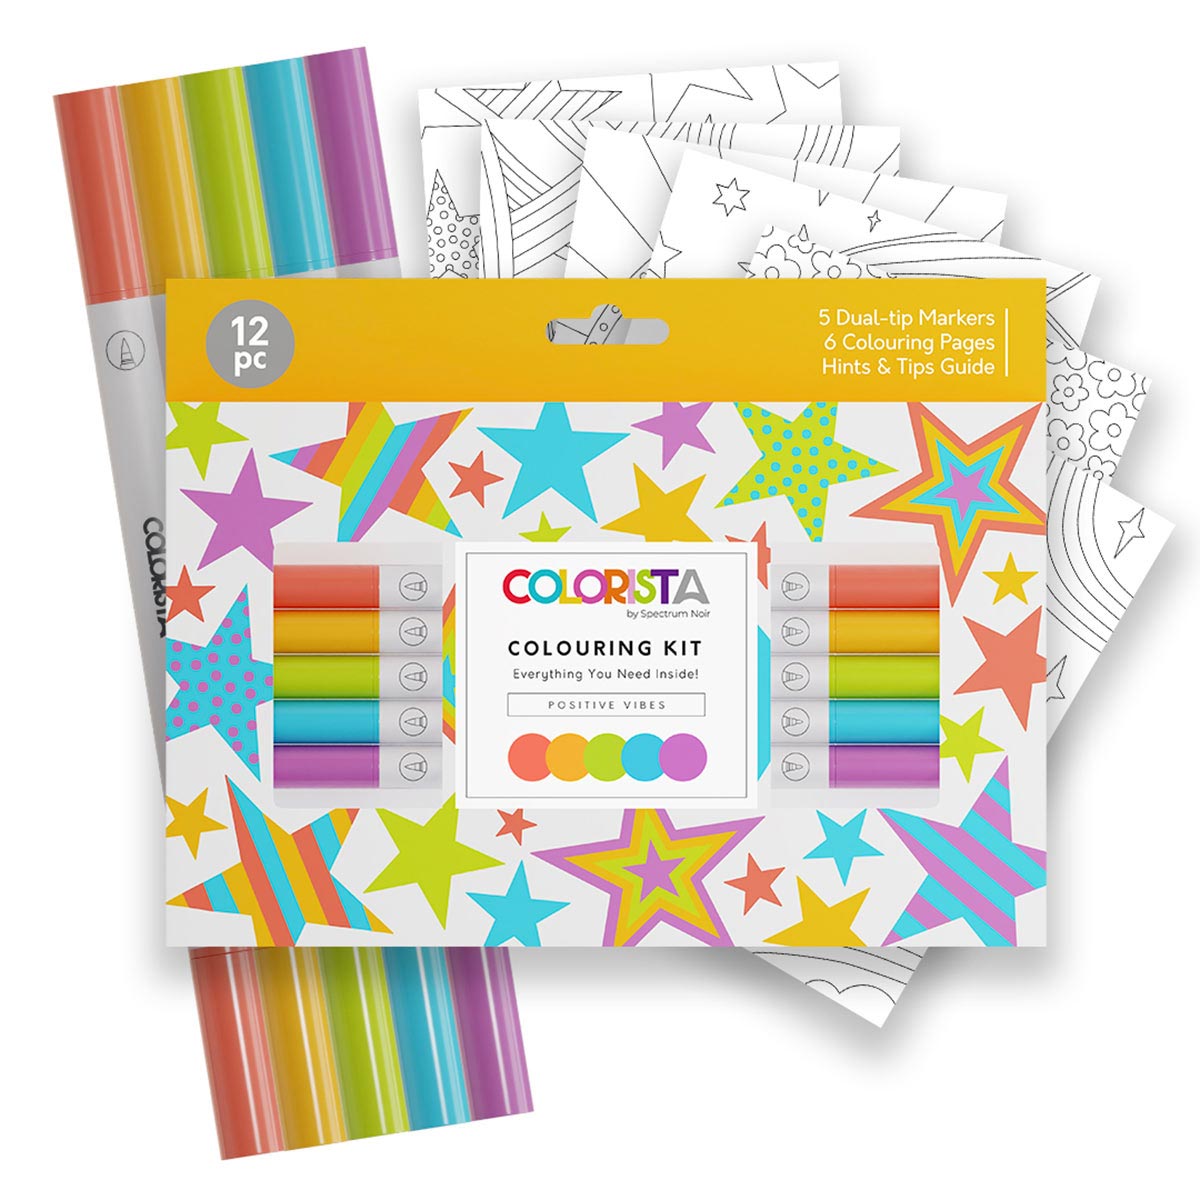 Spectrum Noir Colrista - Kit de coloriage - marqueurs de pinceau à double pointe d'alcool - vibrations positives